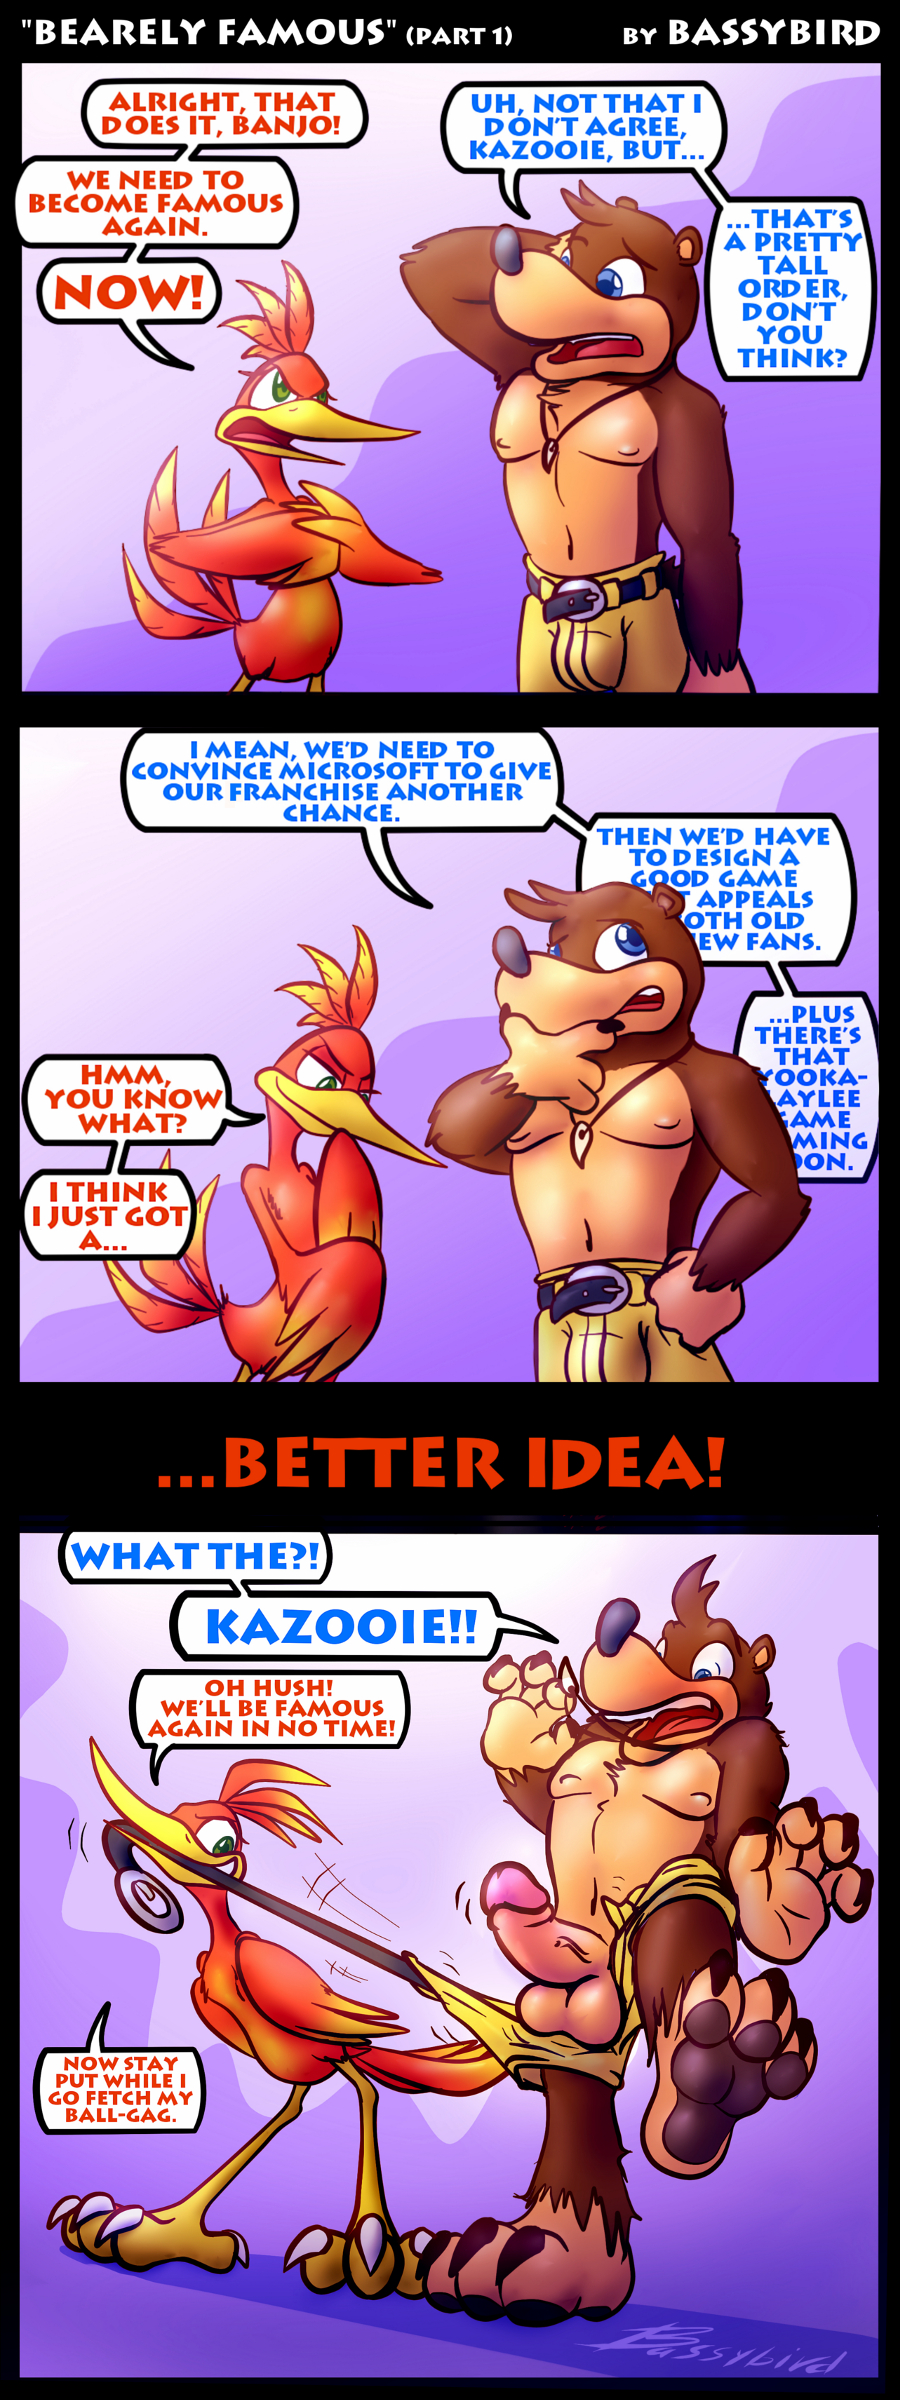 Banjo and kazooie porn comic